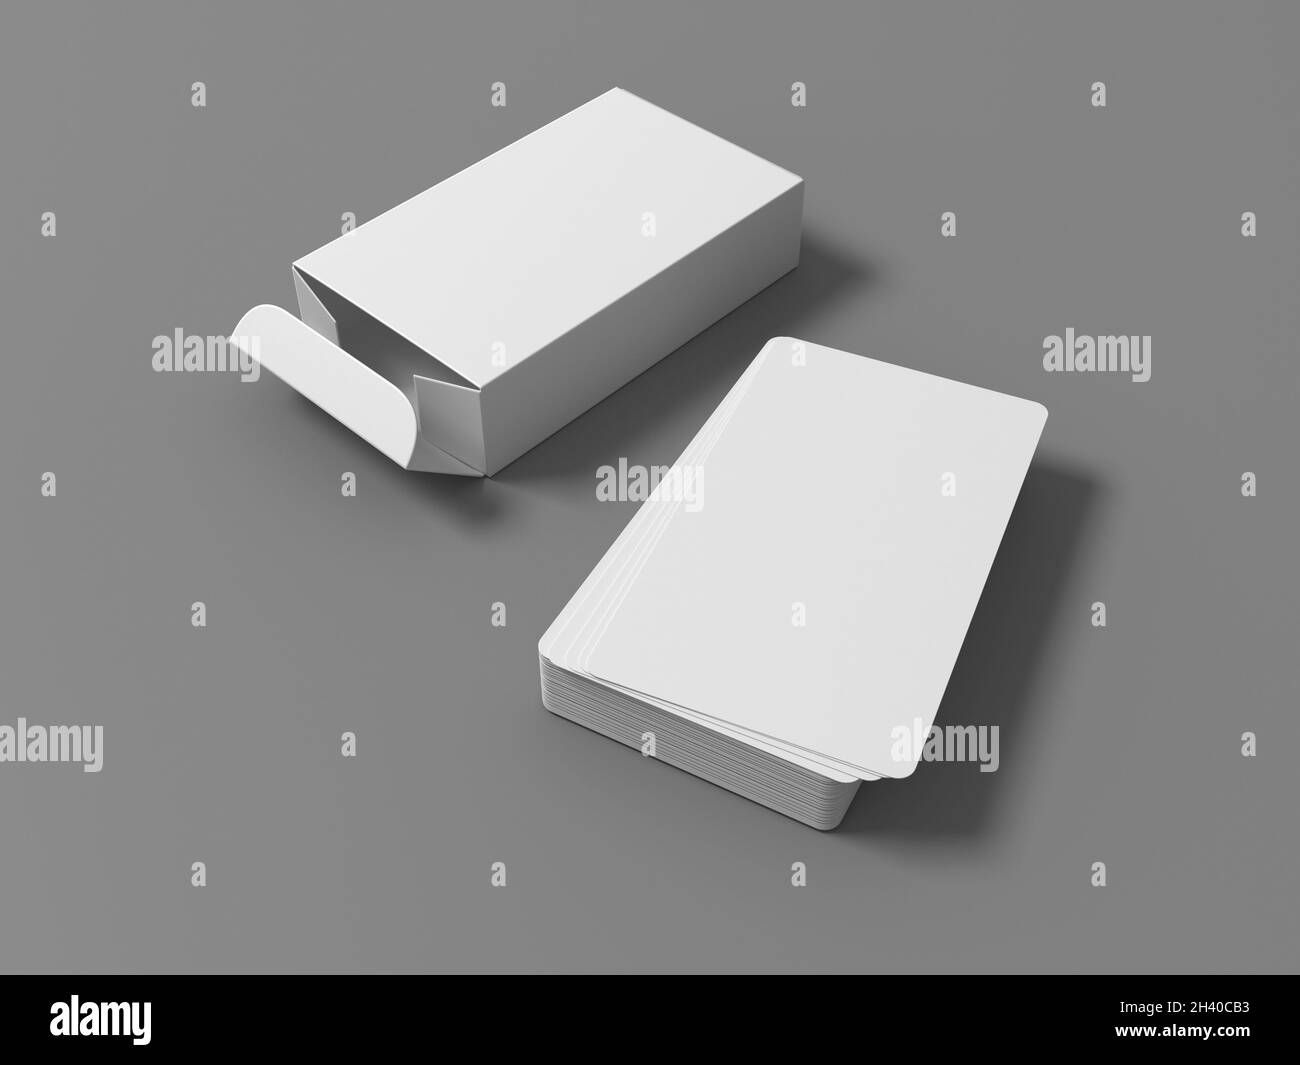 rendu 3d d'un jeu de cartes blanc avec emballage sur fond gris Banque D'Images